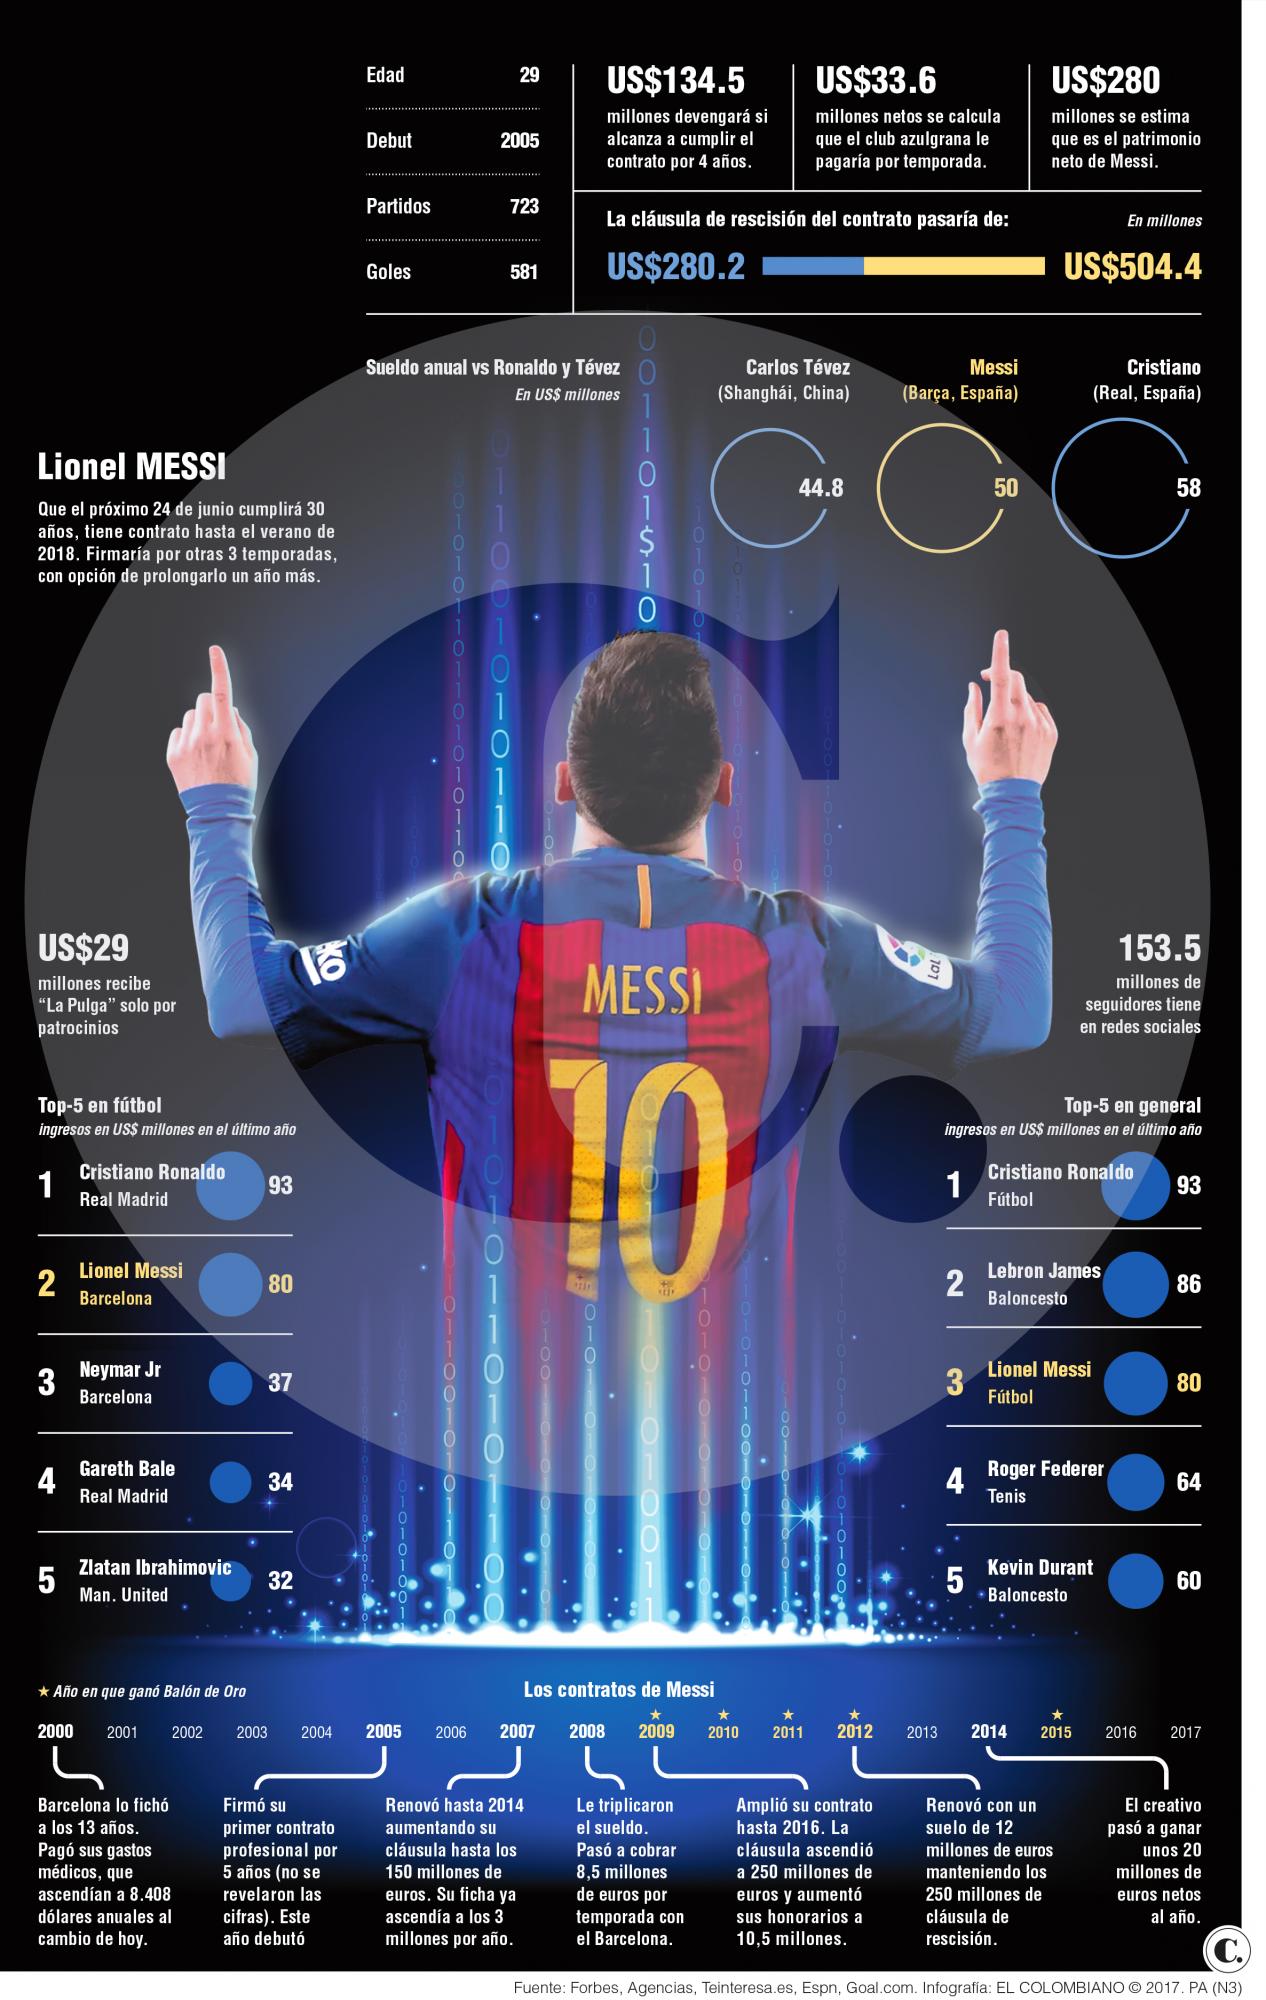 Messi amasa una fortuna